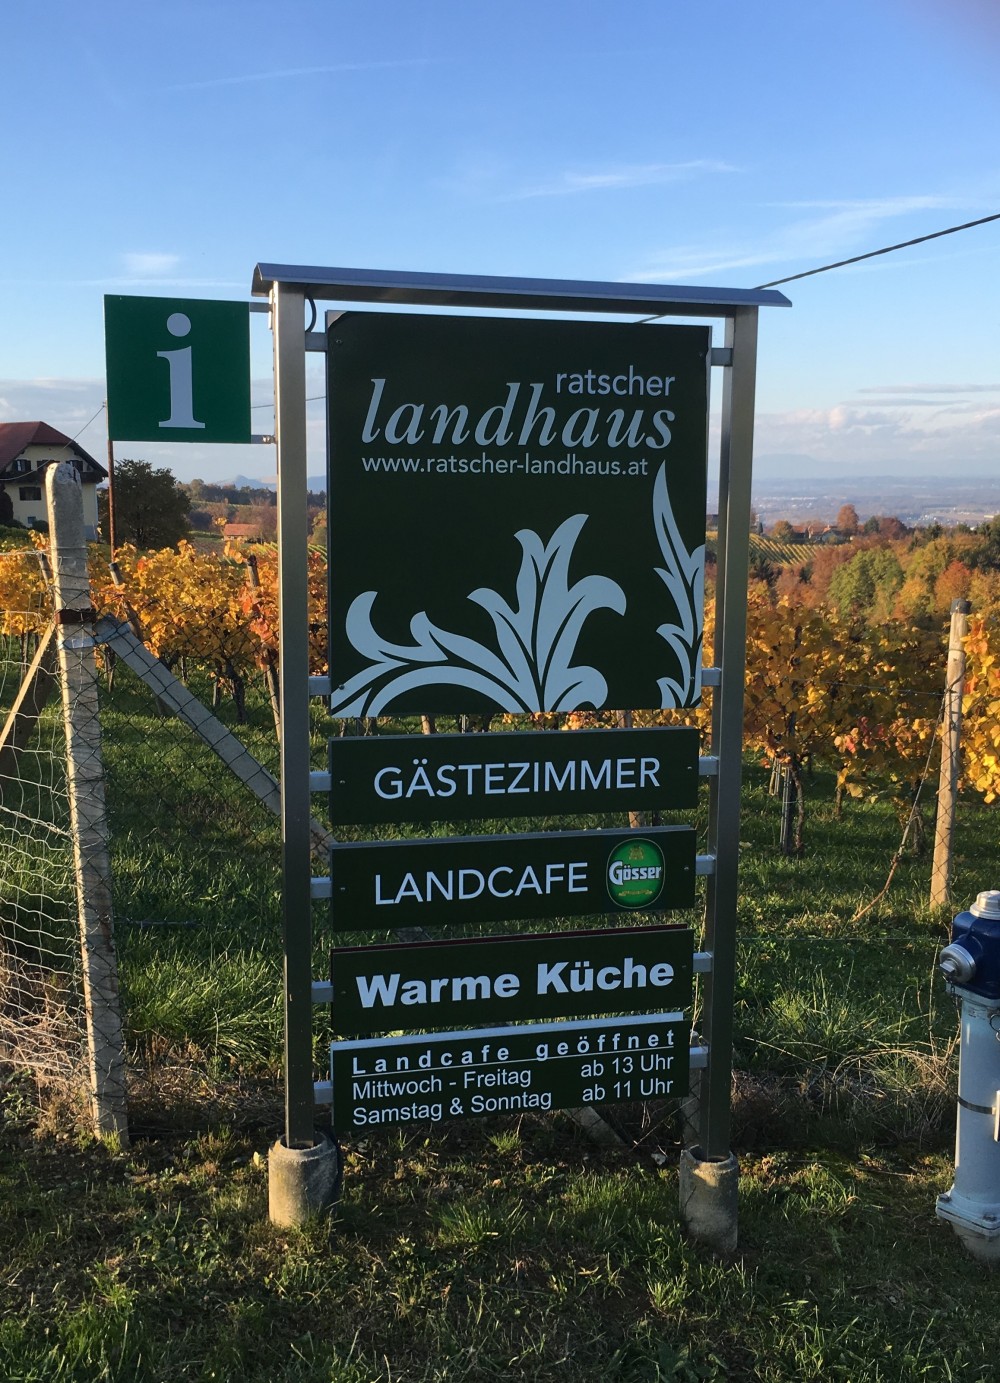 Ratscher Landhaus - Ratsch a.d. Weinstraße